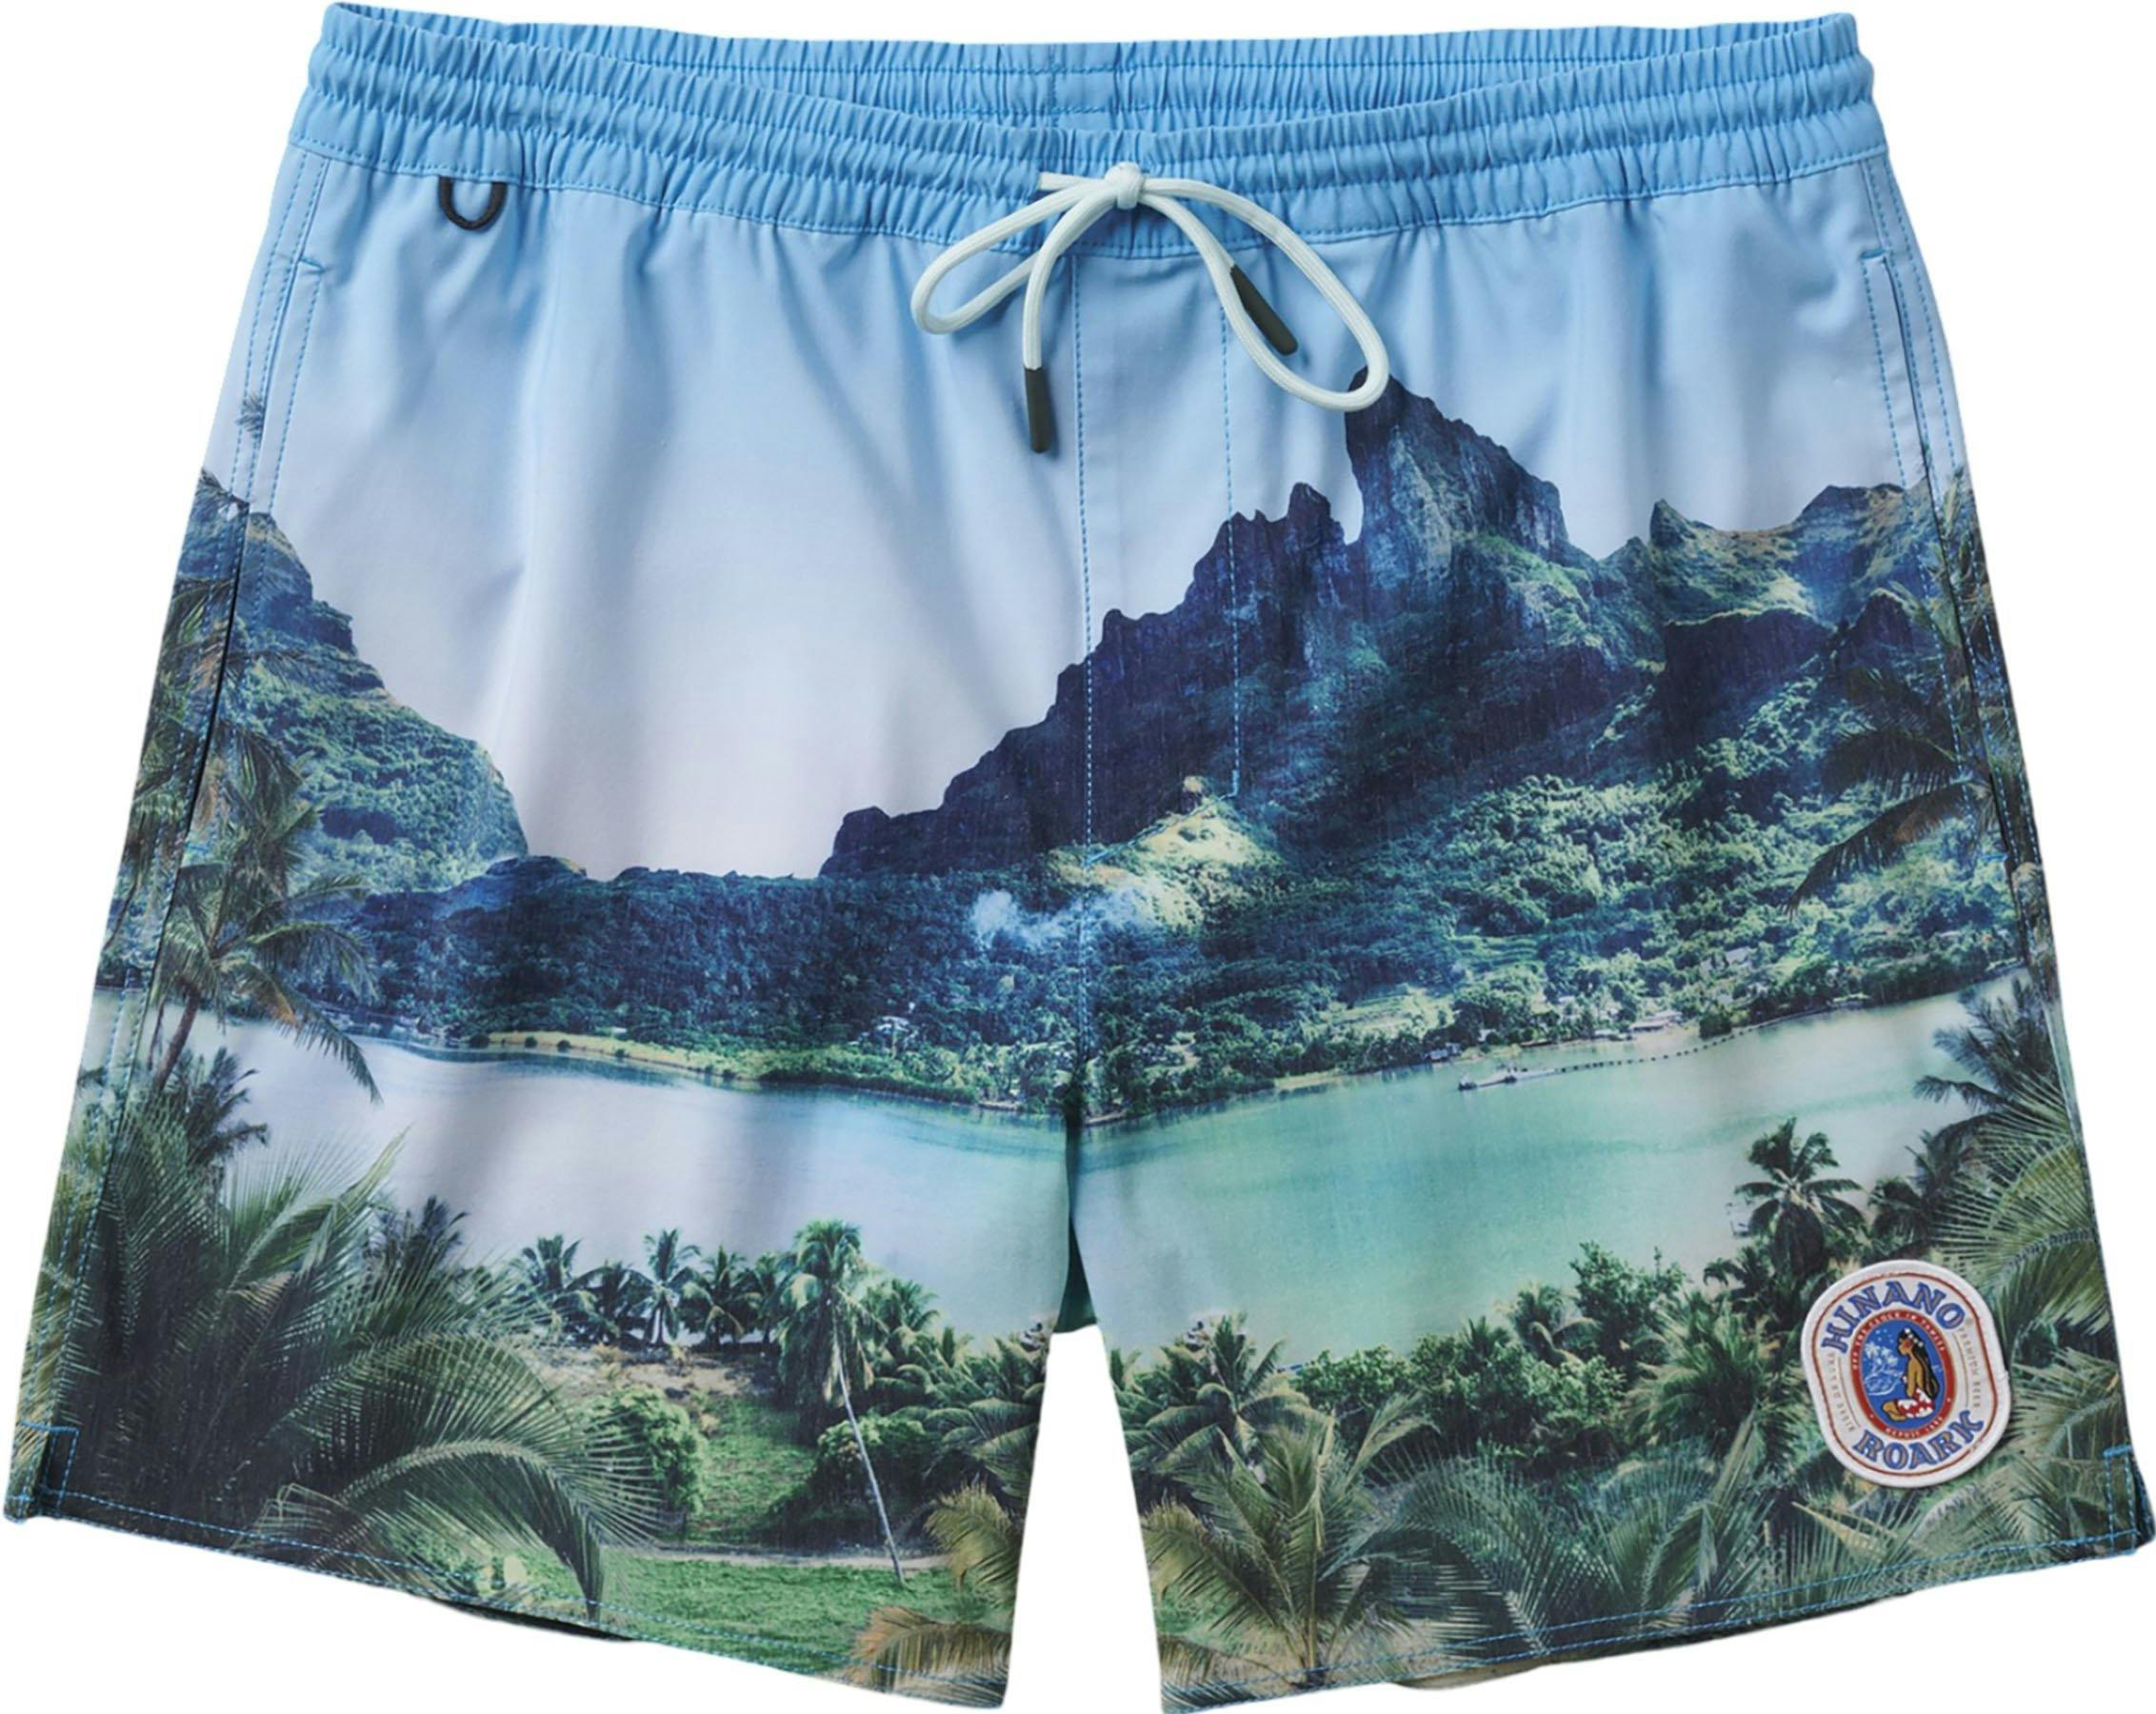 Product image for Shorey Hinano Board Shorts 16" - Men's